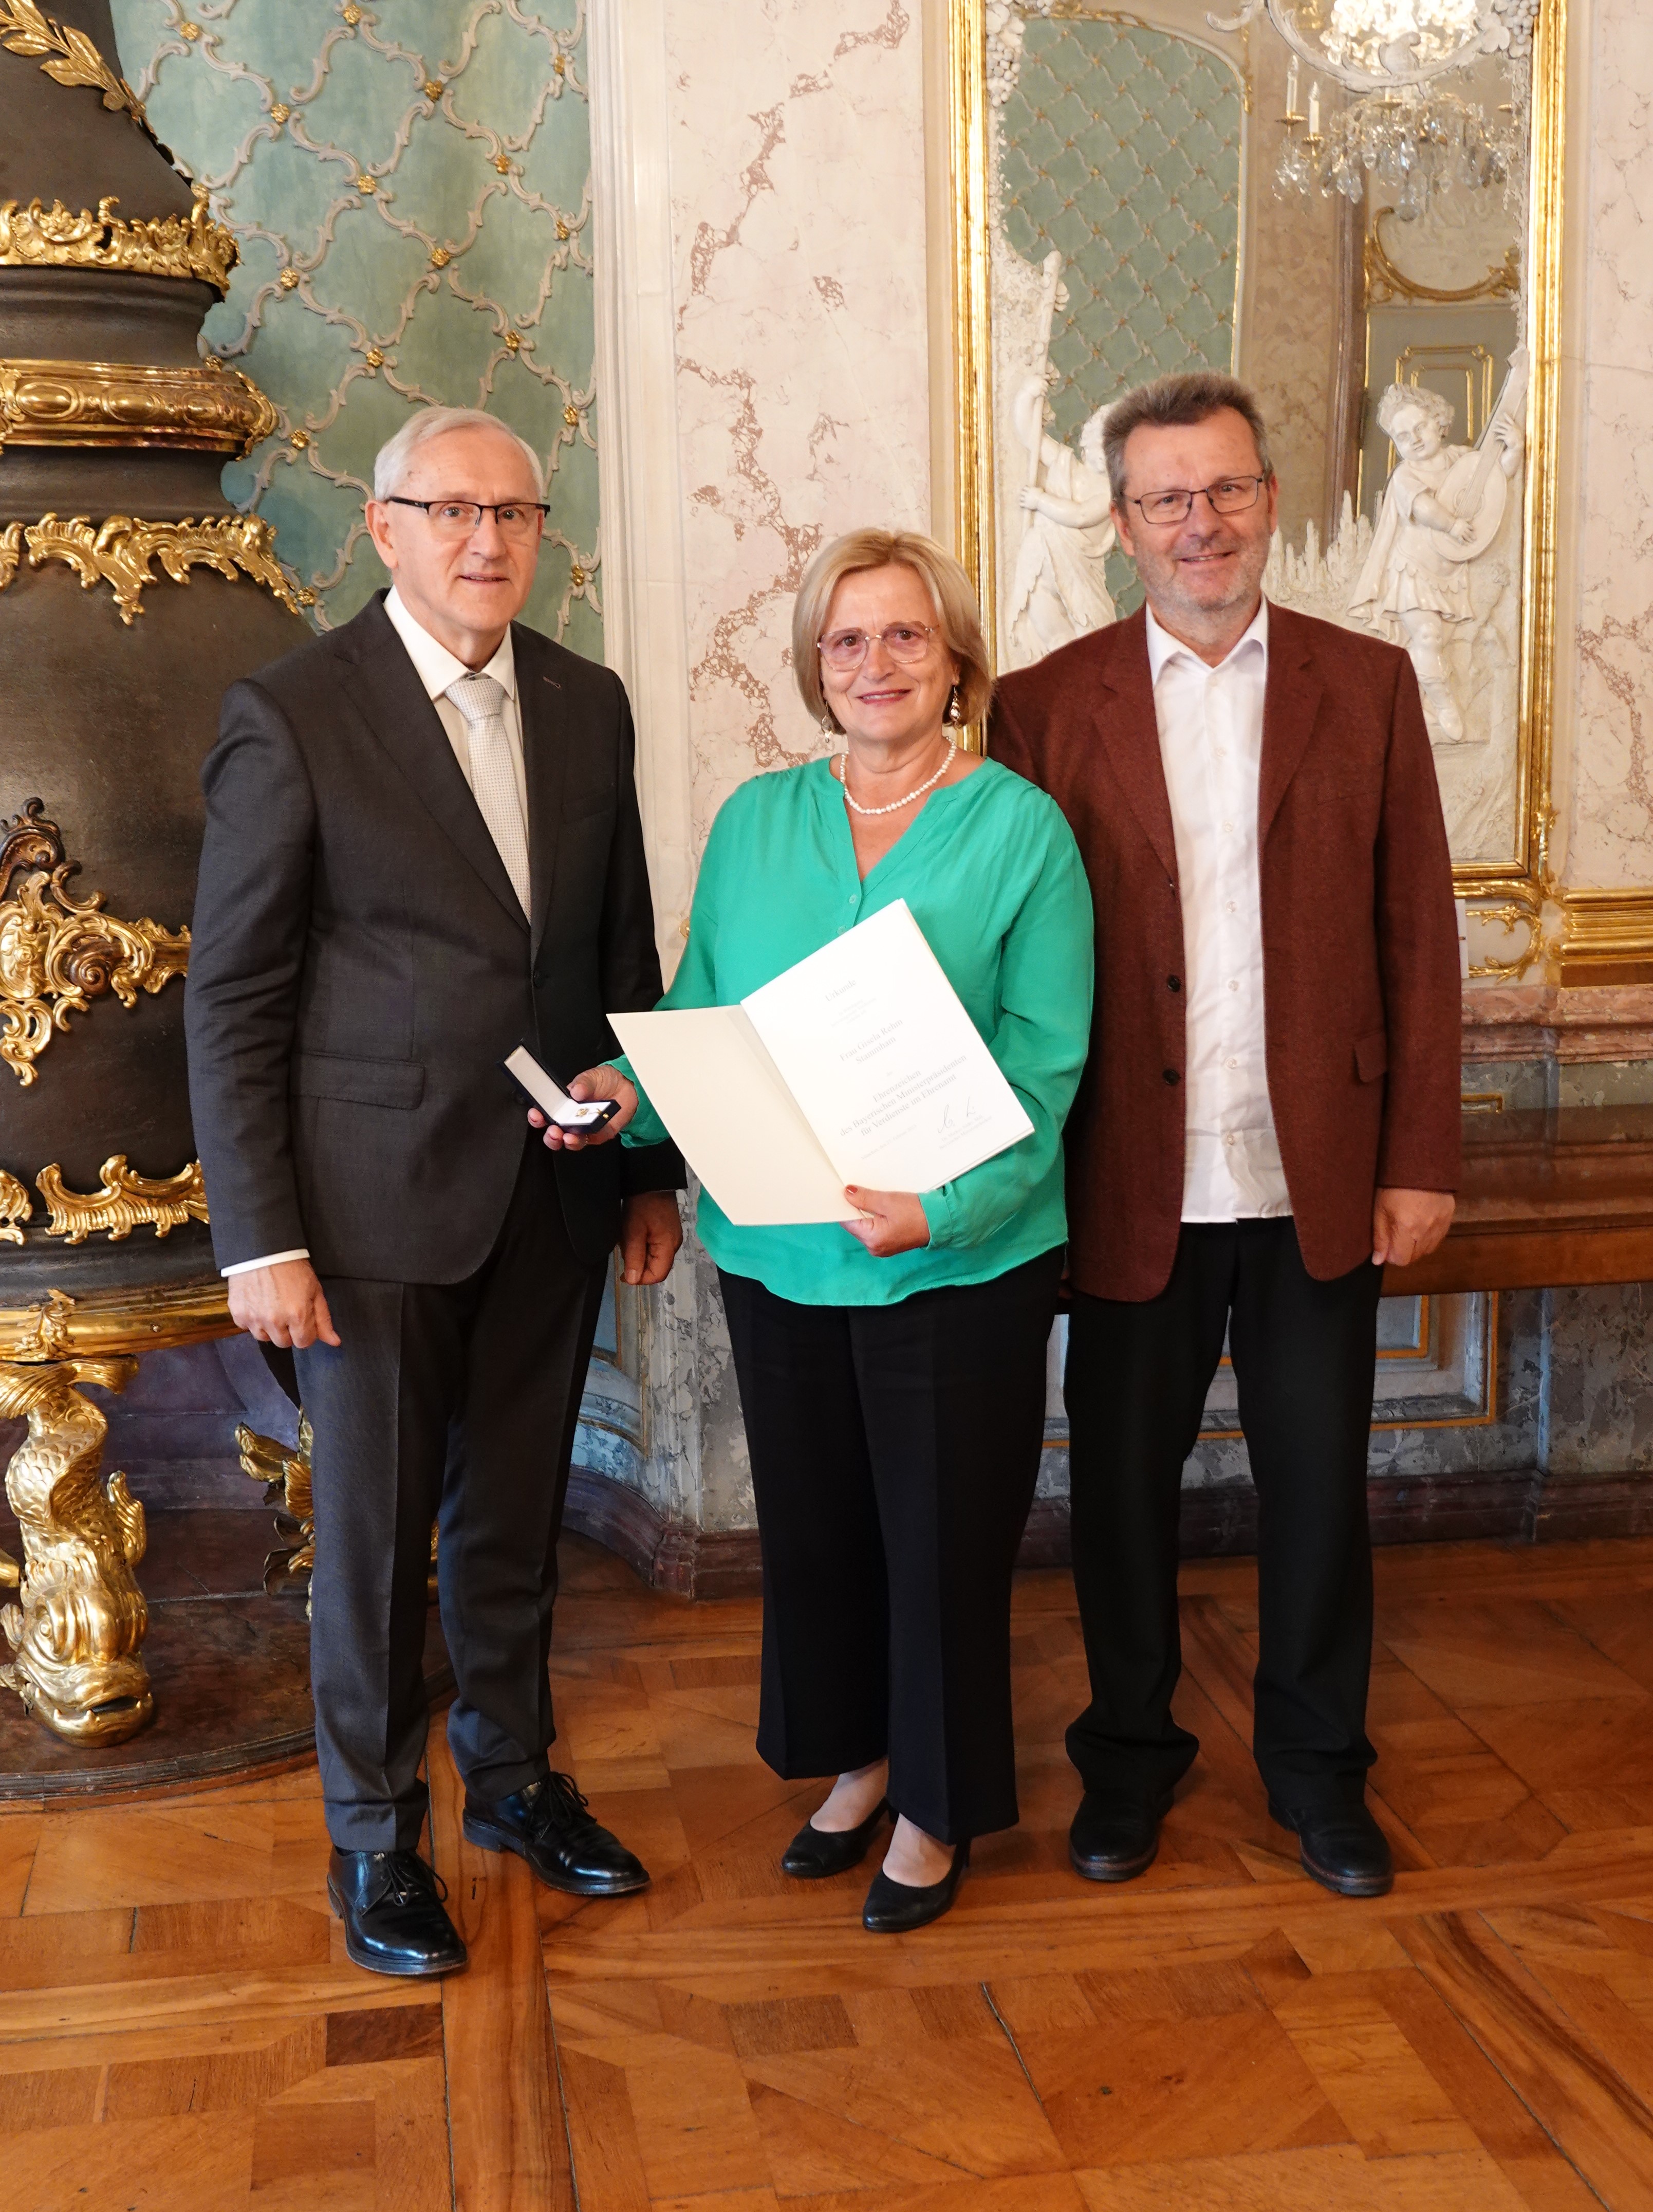 Der stellvertretende Landrat Bernhard Sammiller überreichte Gisela Rehm das Ehrenzeichen des Bayerischen Ministerpräsidenten. 2. Bürgermeister Wolfgang Köcher überbrachte die Glückwünsche der Gemeinde Stammham (v. l. n. r.)